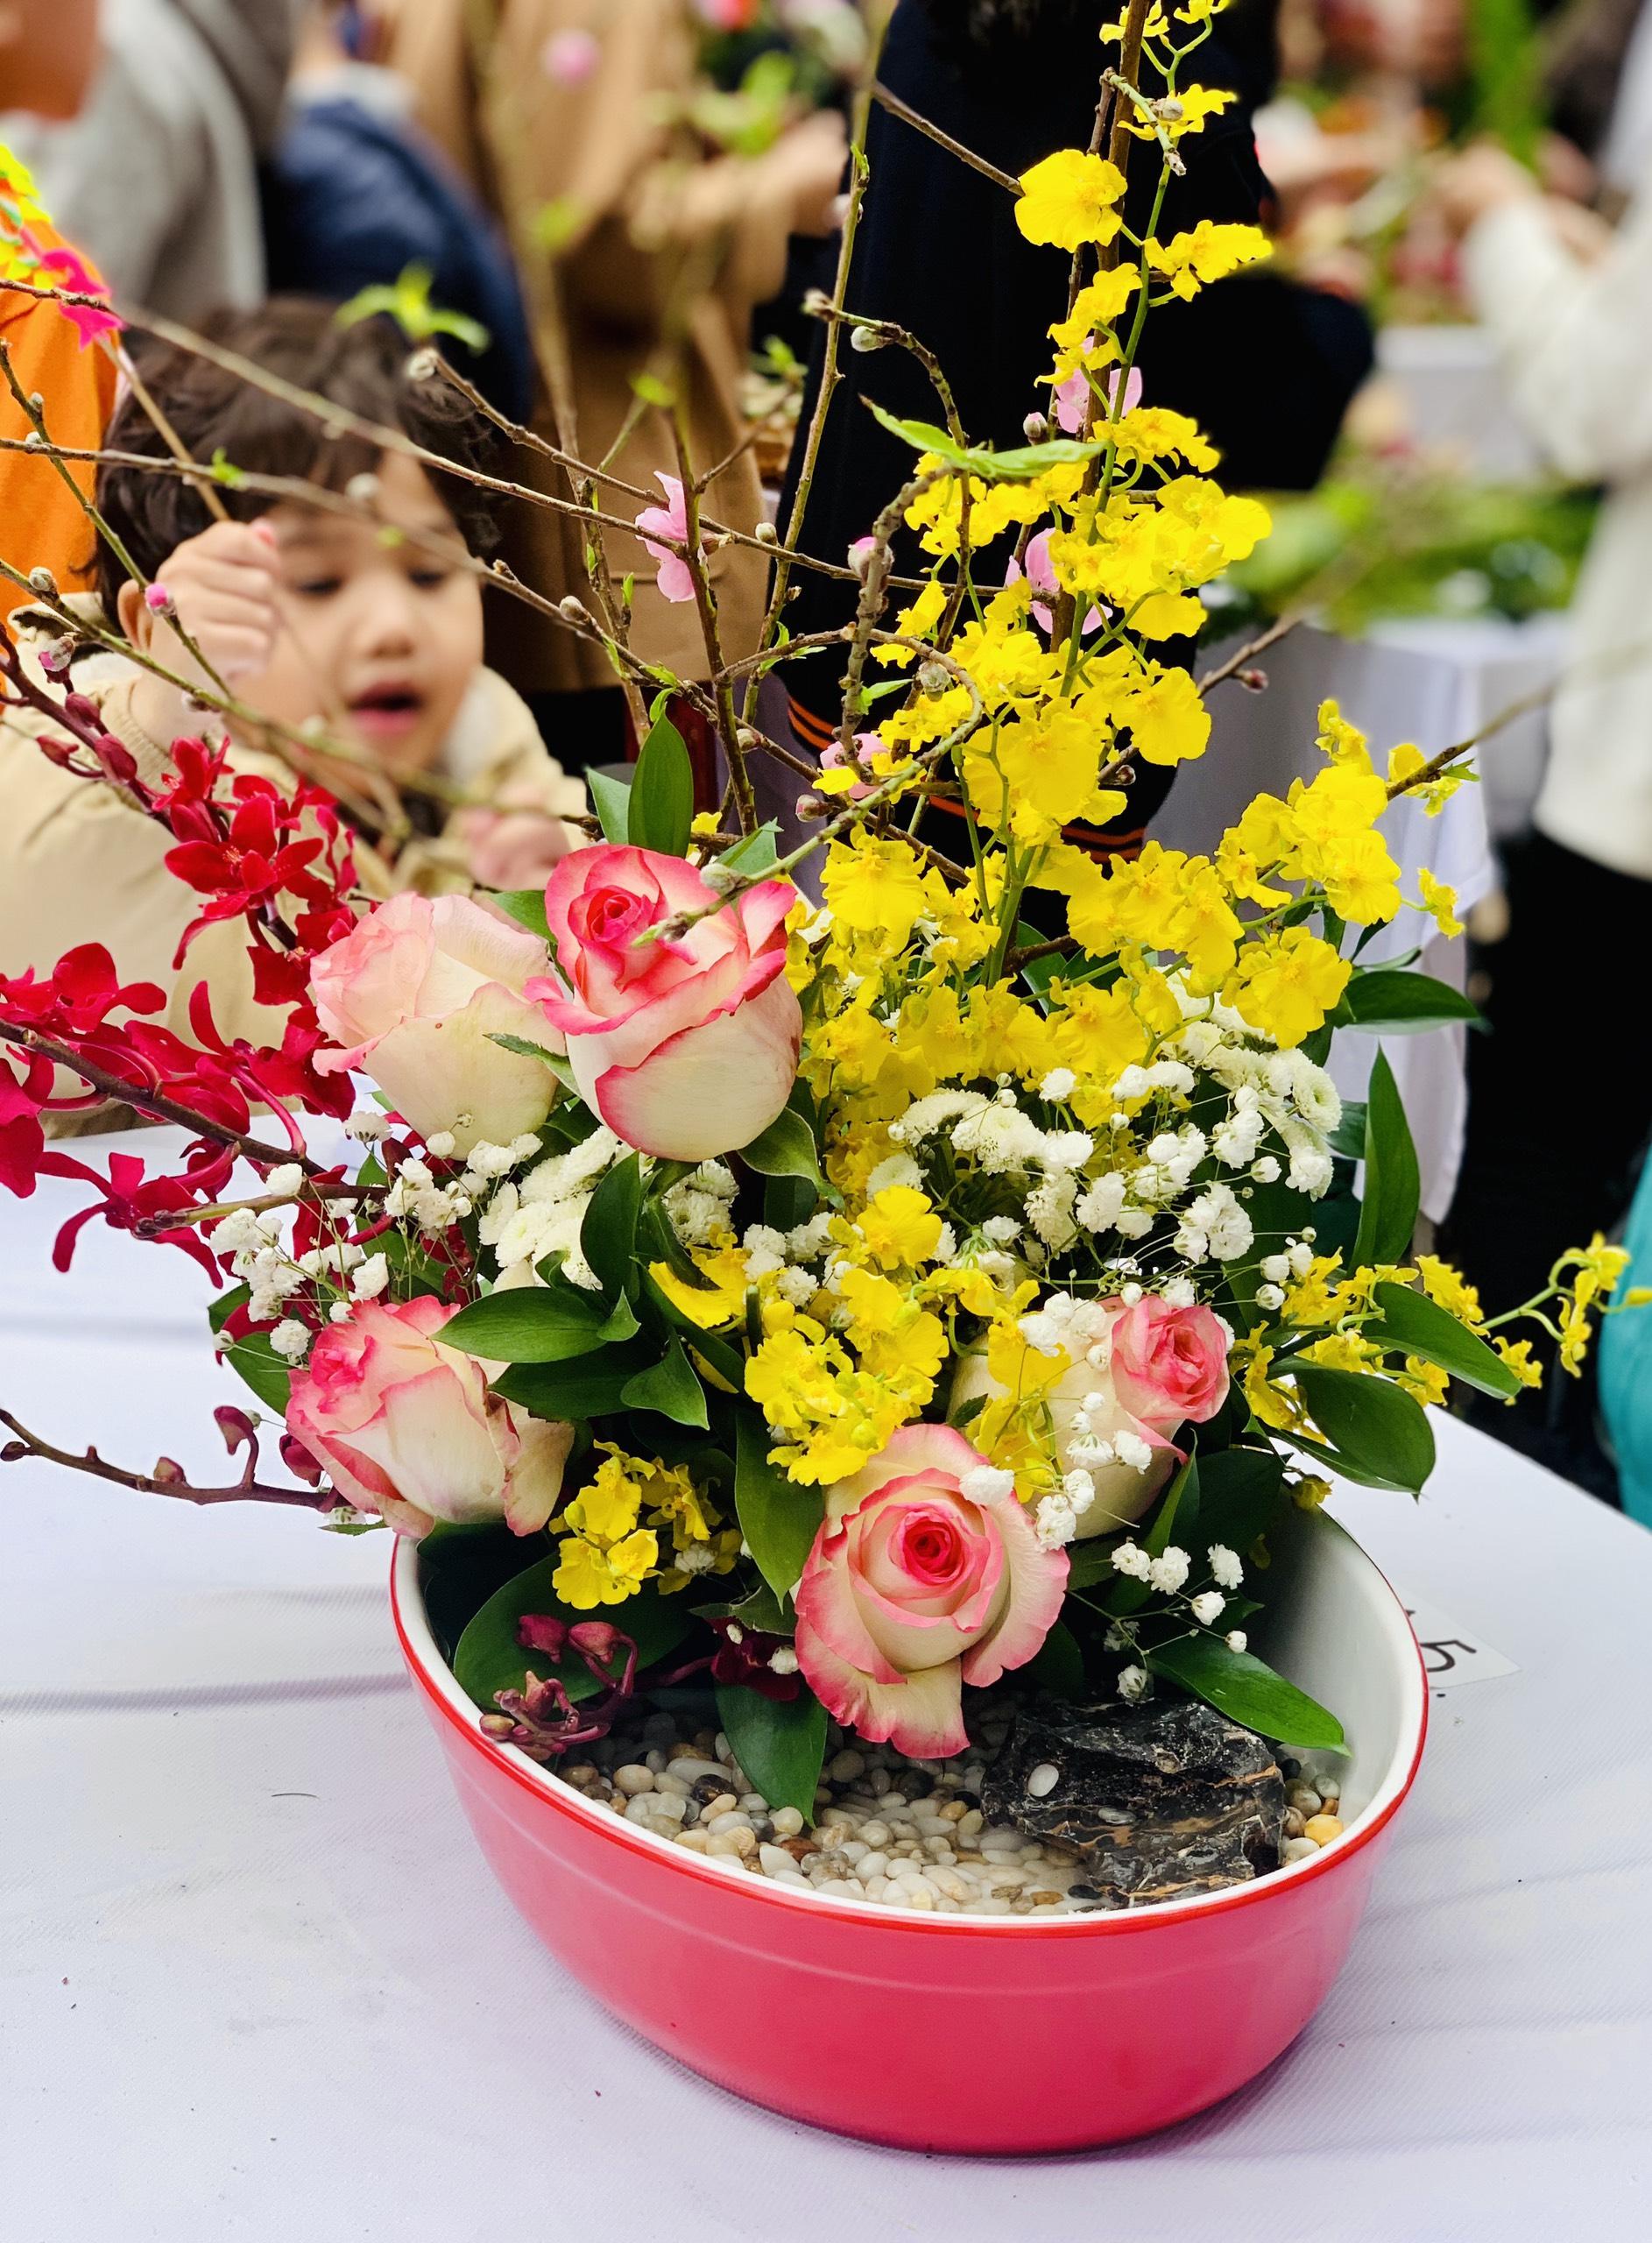 Tác phẩm phong cách cắm hoa nghệ thuật Nhật Bản Ikebana do chính tay học sinh FPT Schools hoàn thiện